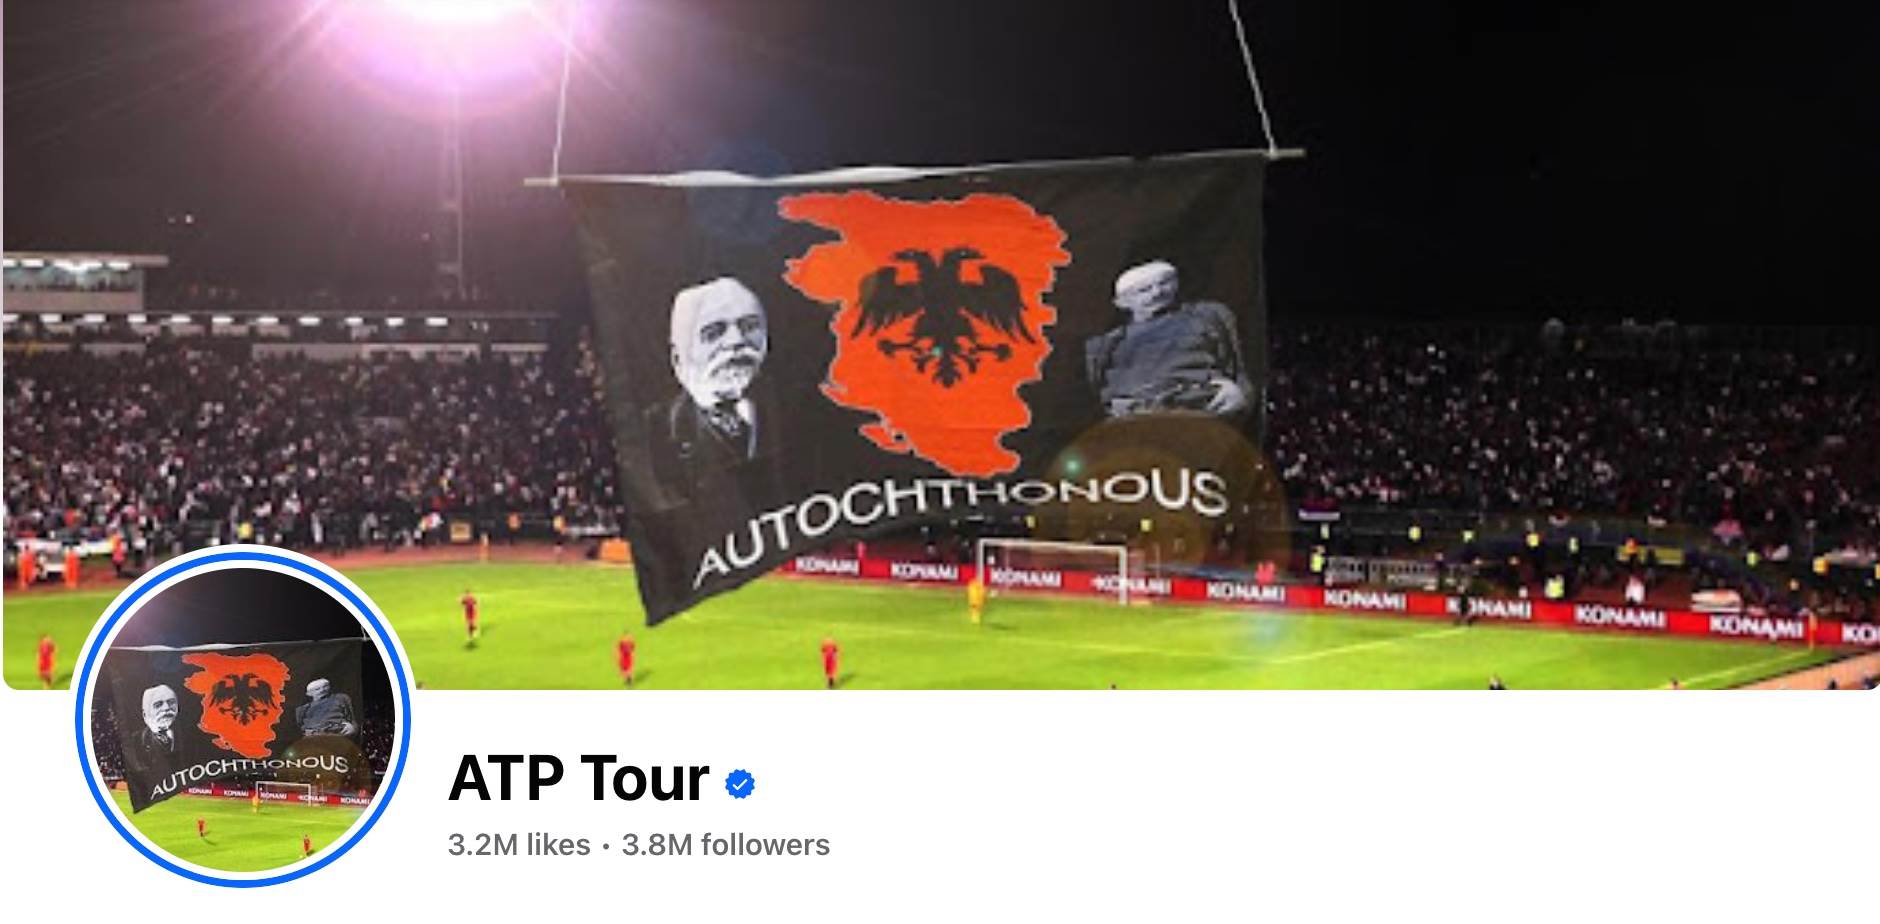  Hakovana stranica ATP zastava Velike Albanije 